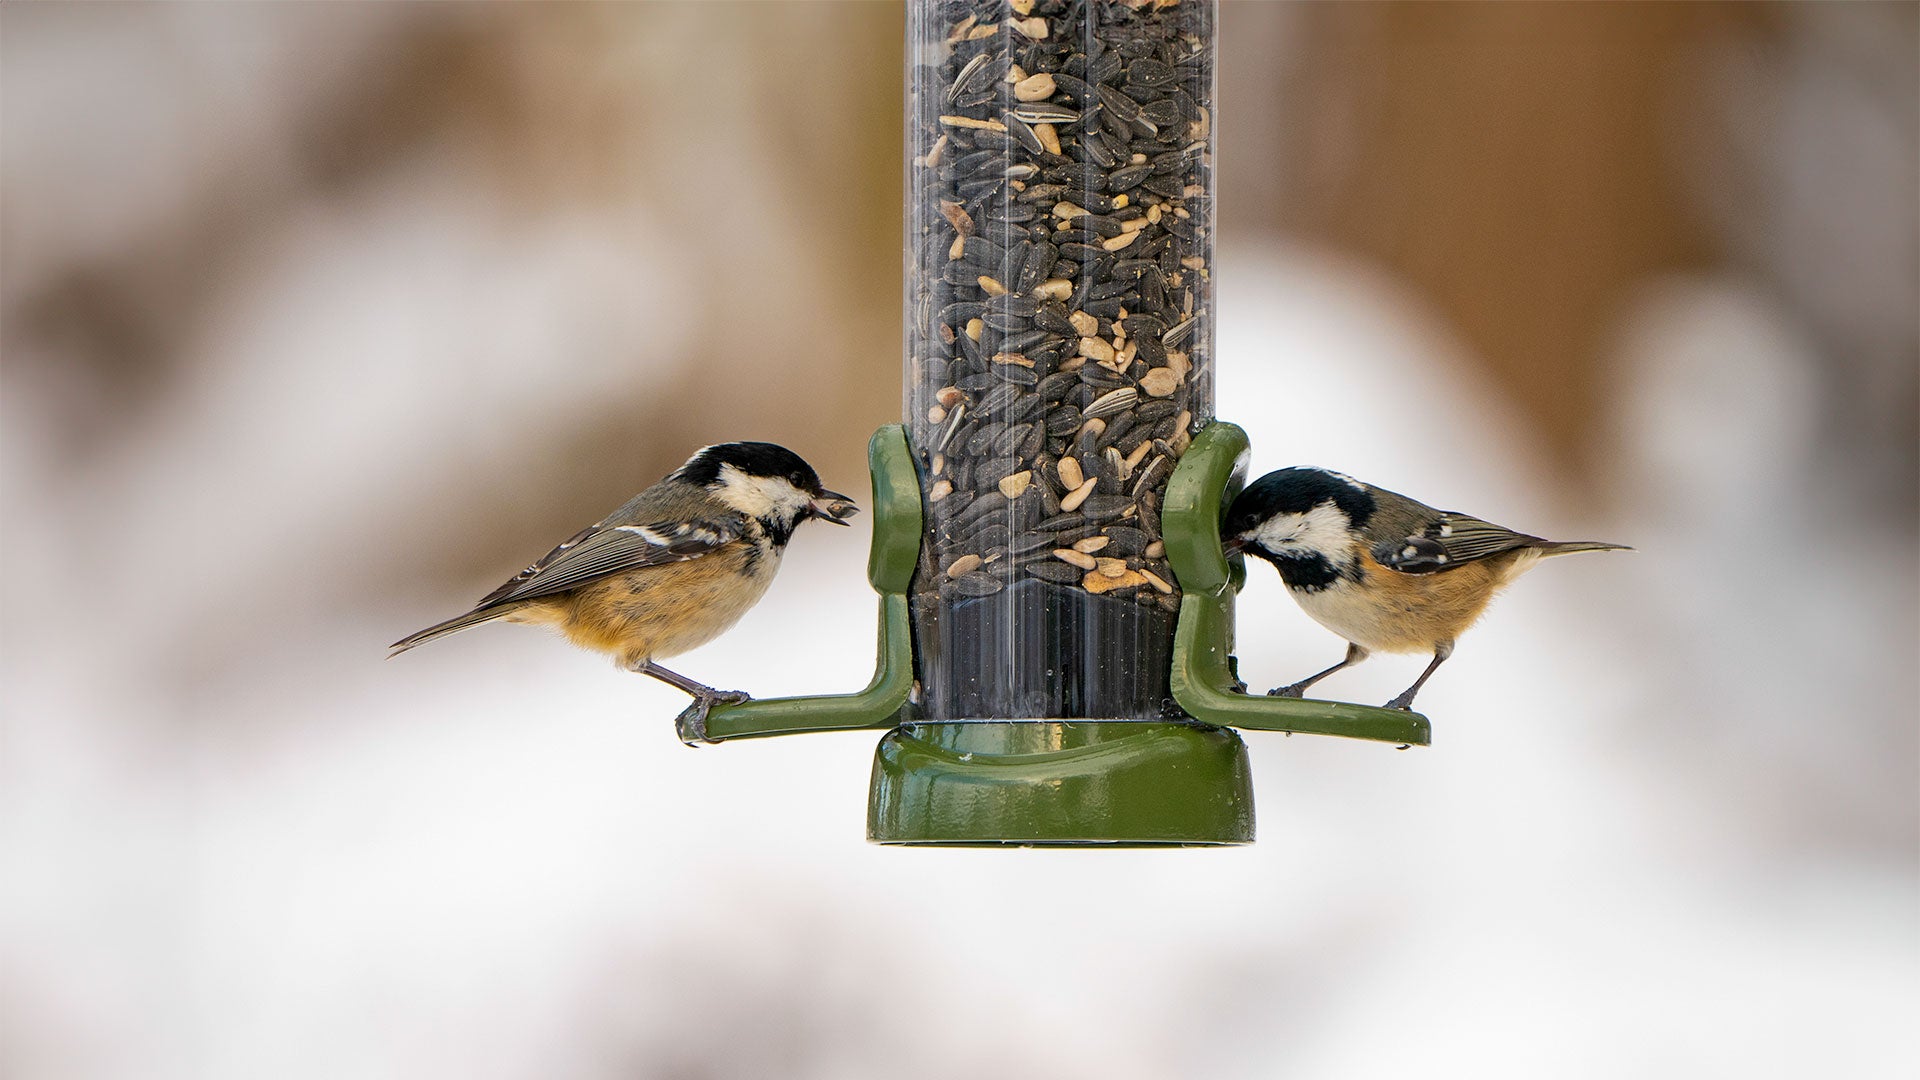 Birds feeding from a seed feeder